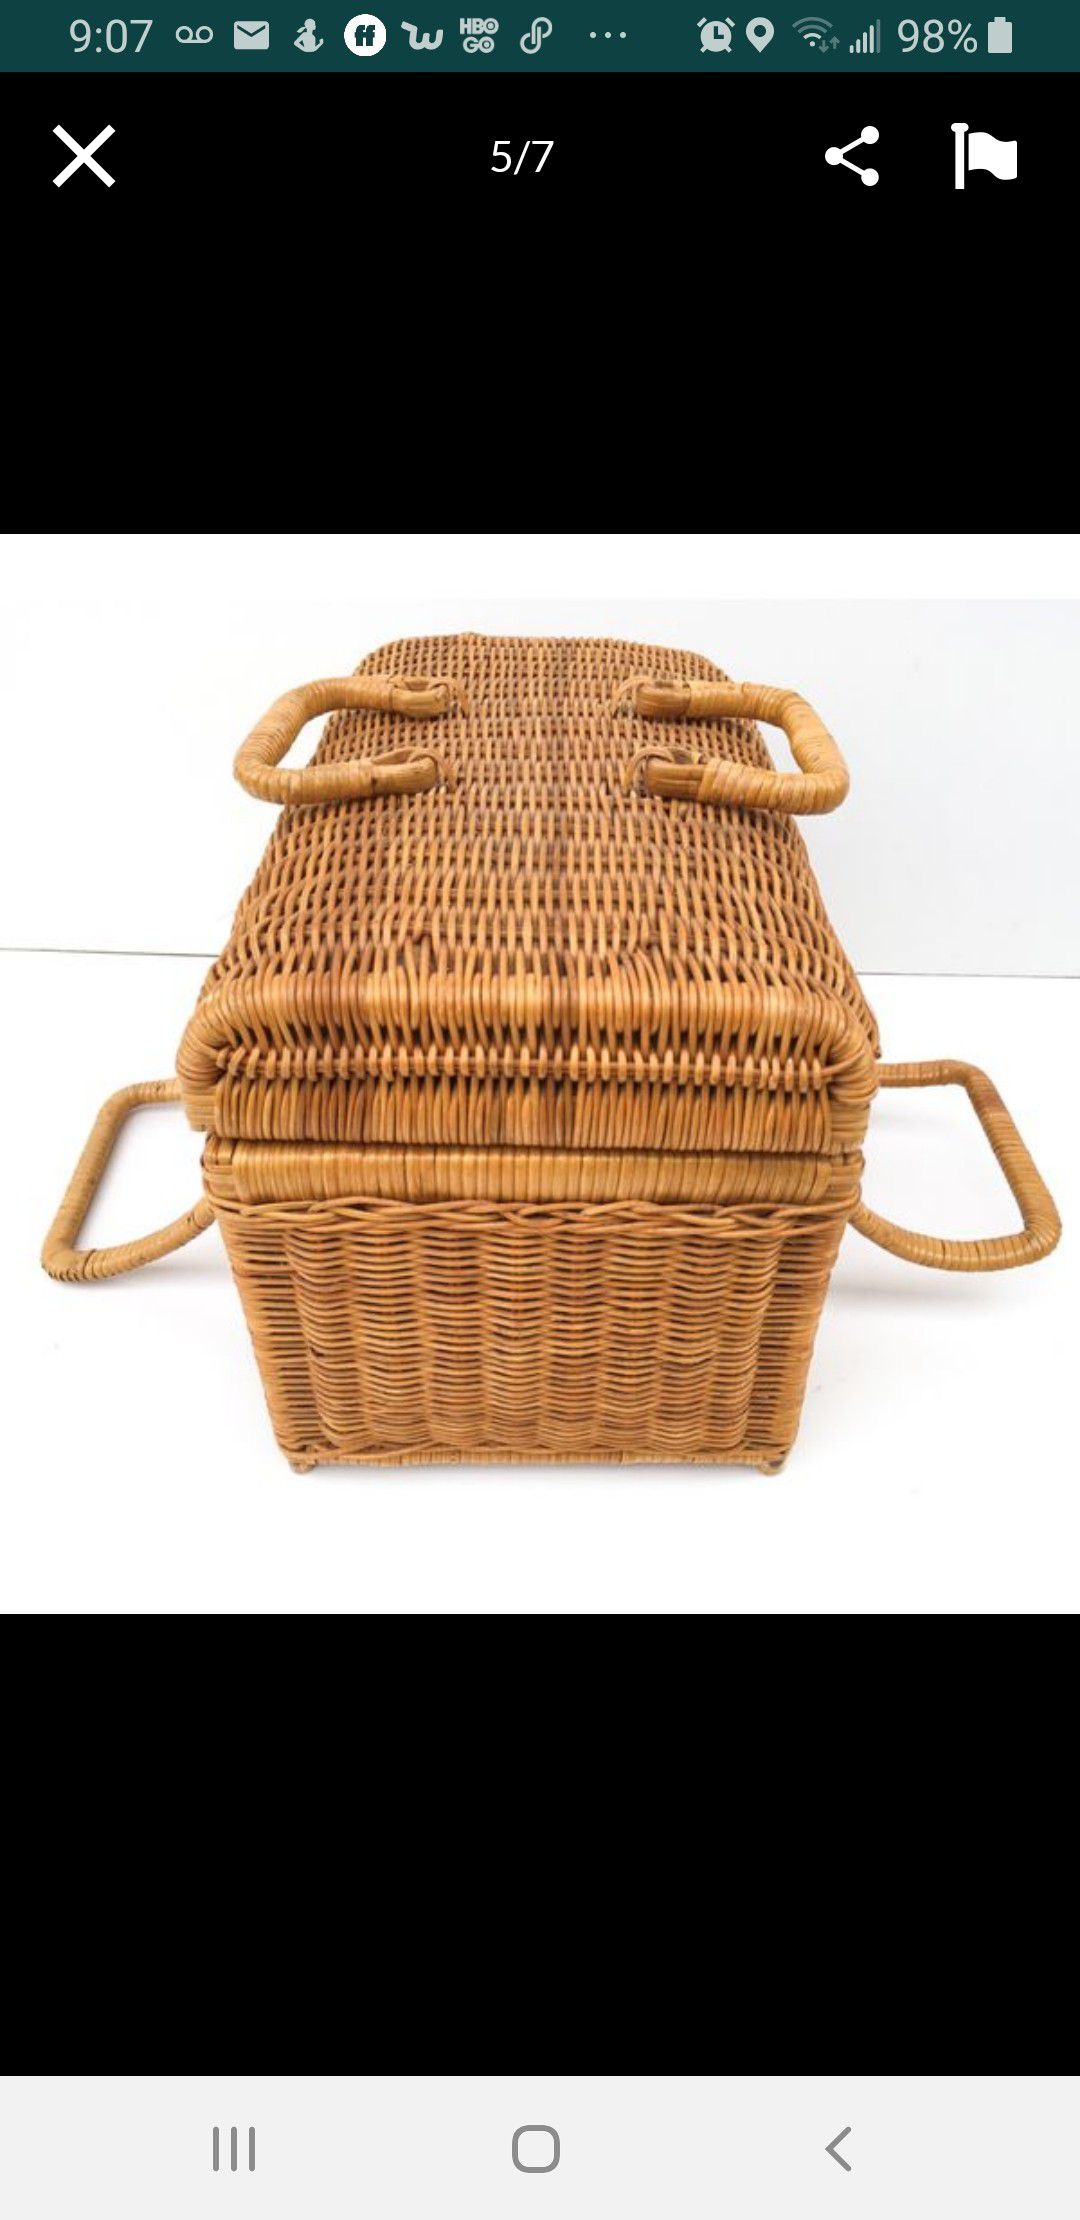 Beautiful wicker basket/purse